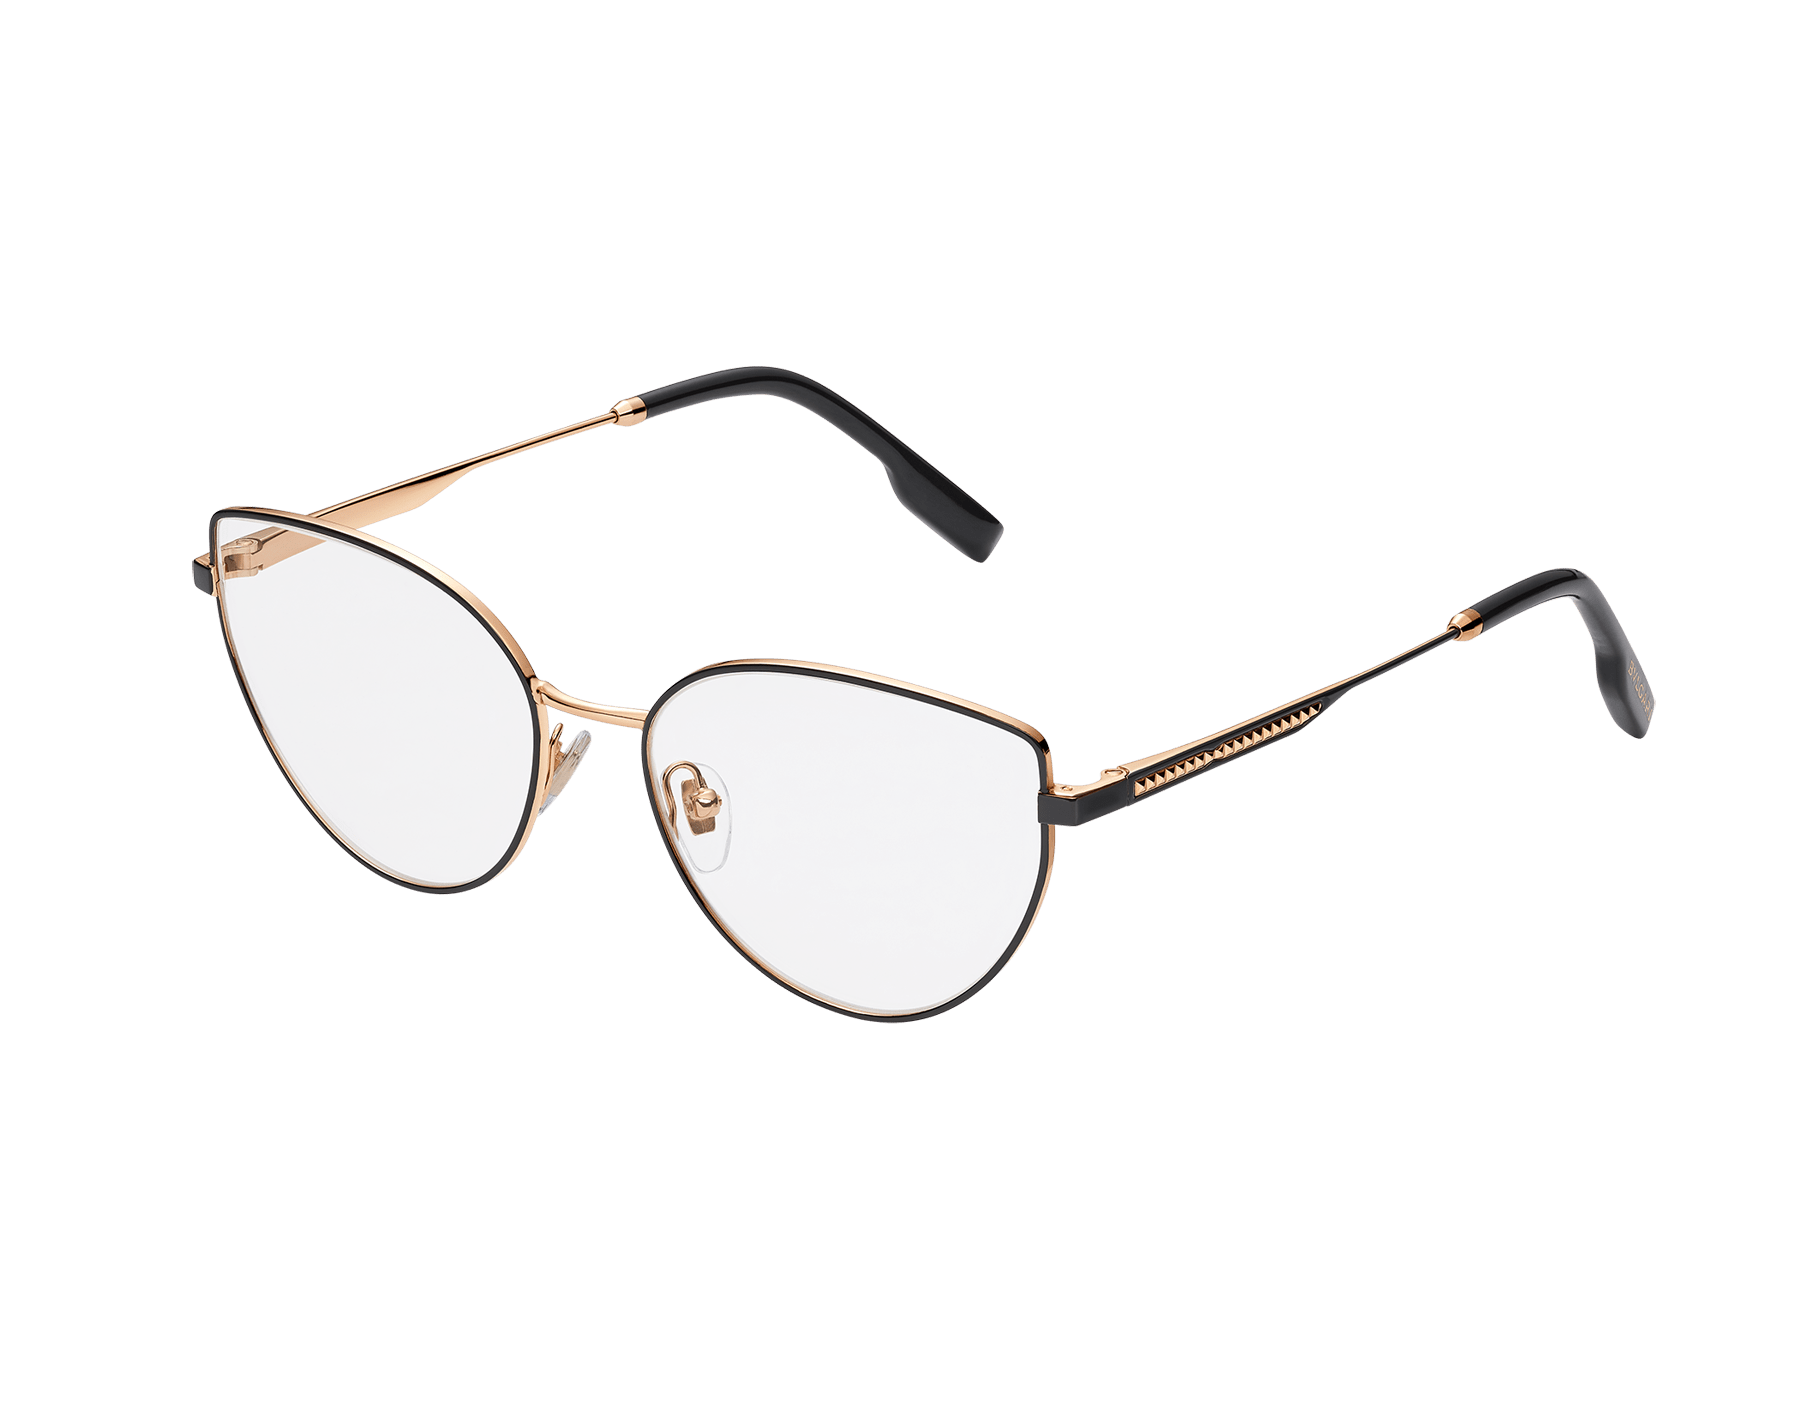 B.zero1 "rock" cat-eye metal glasses with blue light filter lenses 904151 image 1